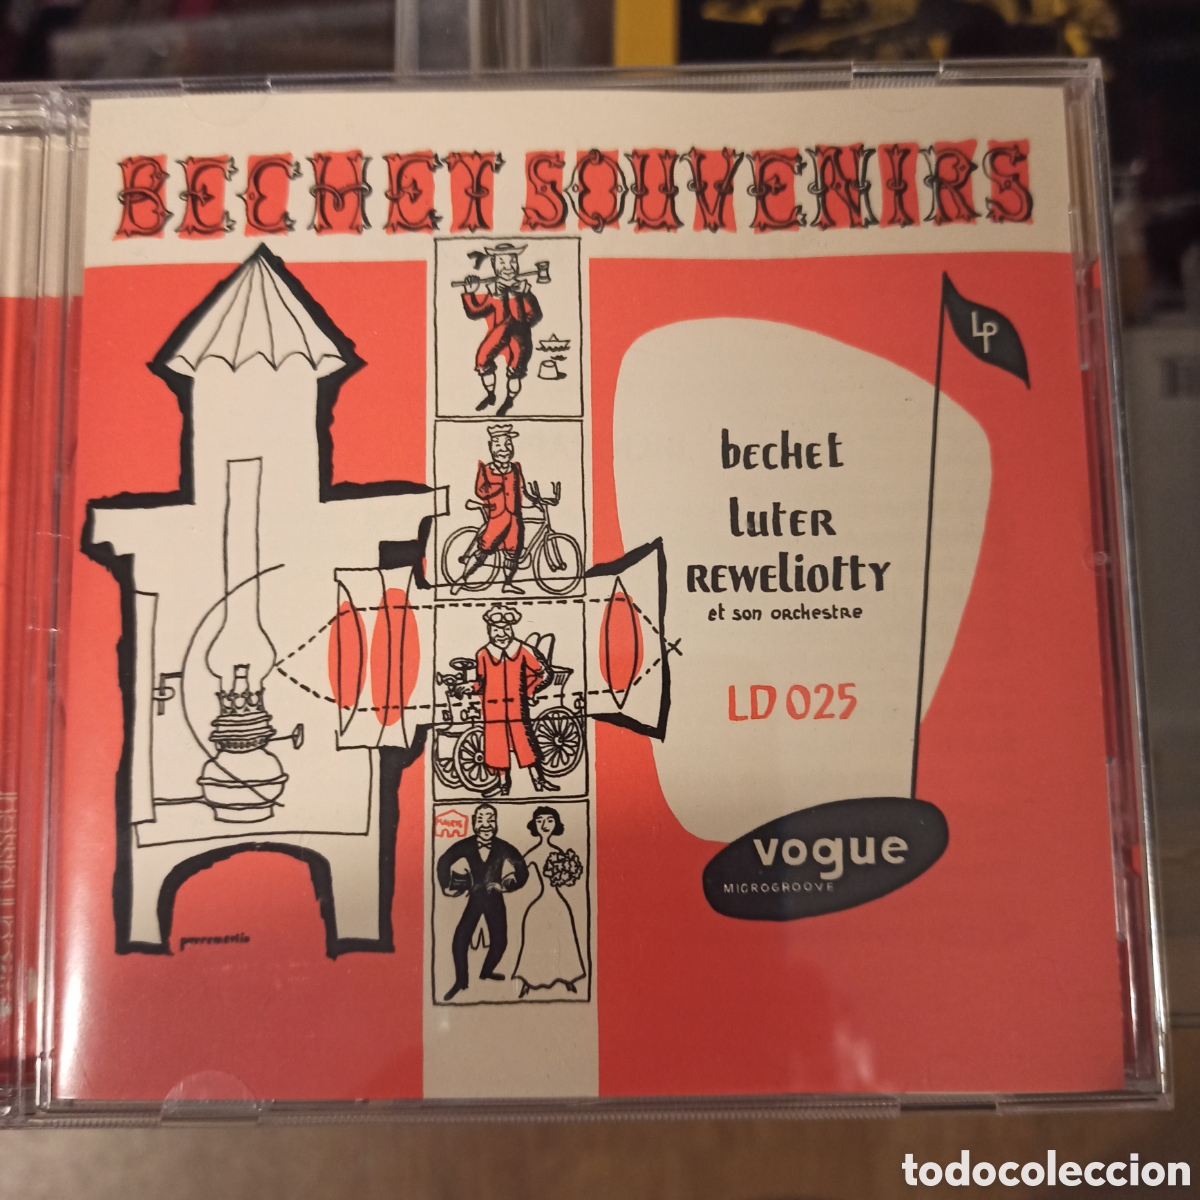 Sidney Bechet, Claude Luter, André Réwéliotty - Bechet Souvenirs